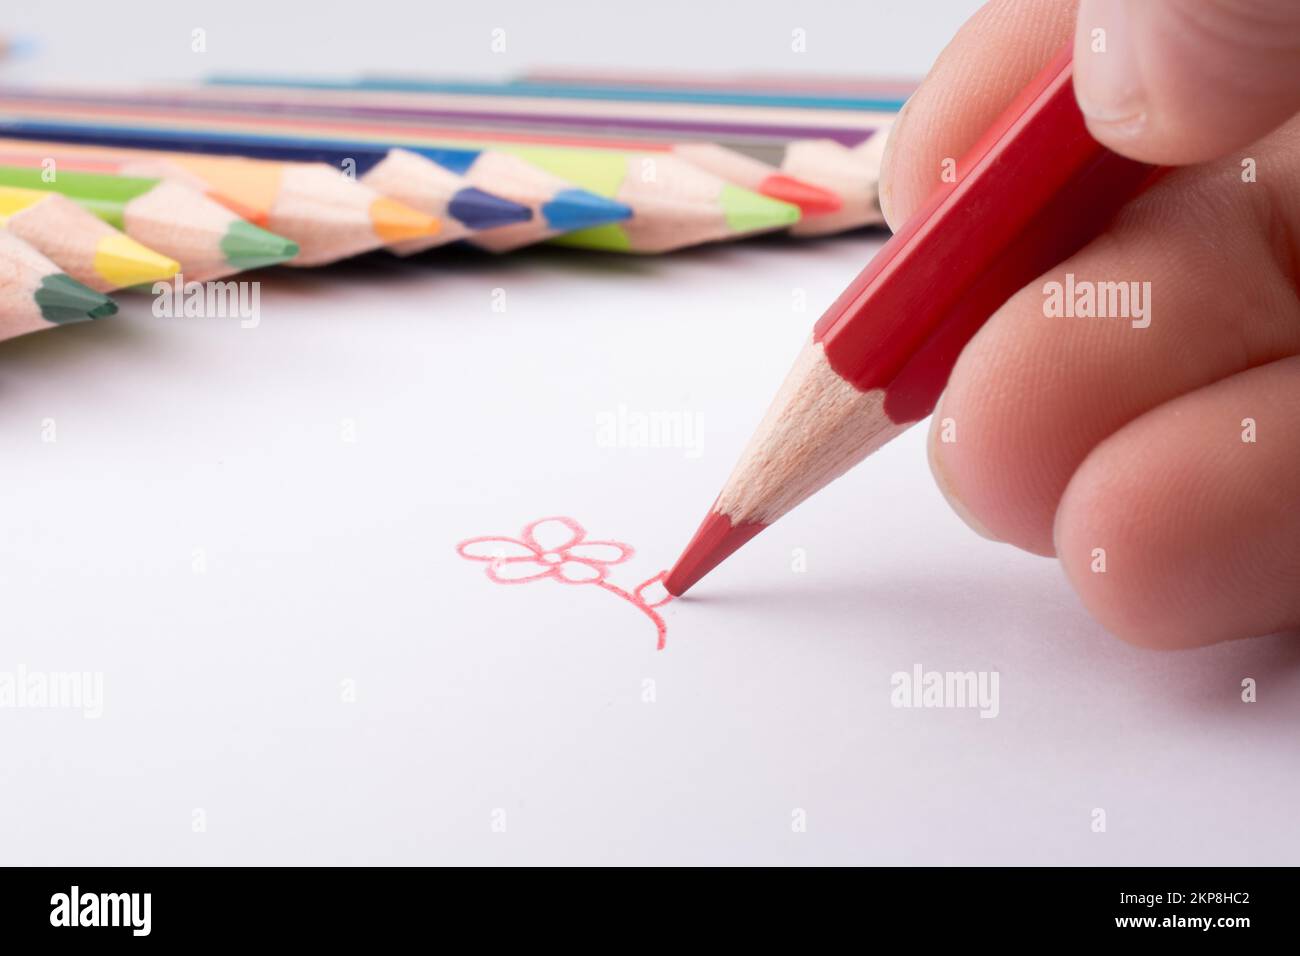 Disegno a mano nei pressi di matite a colori su sfondo bianco Foto Stock